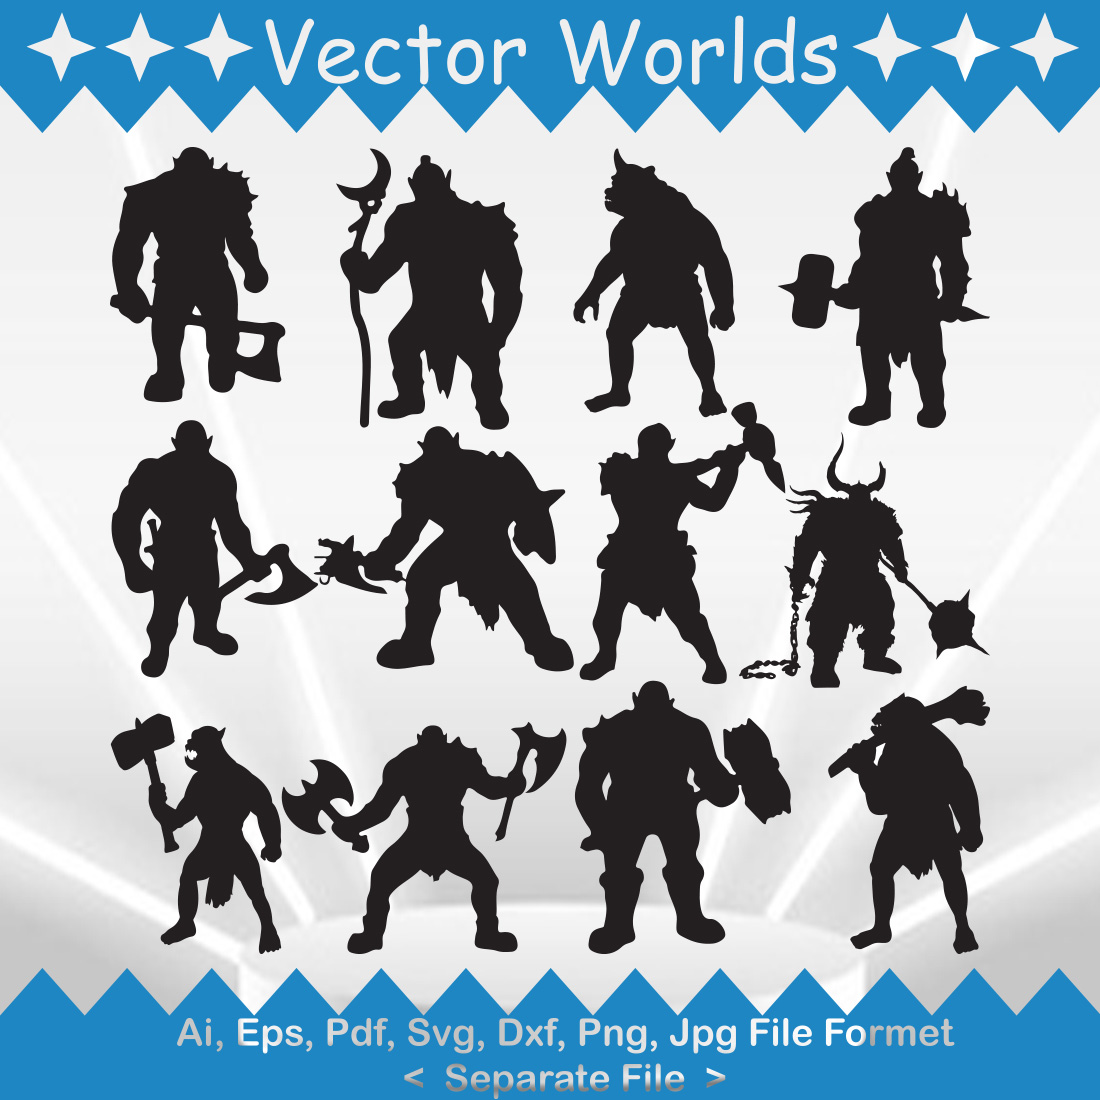 Ogre SVG Vector Design cover image.